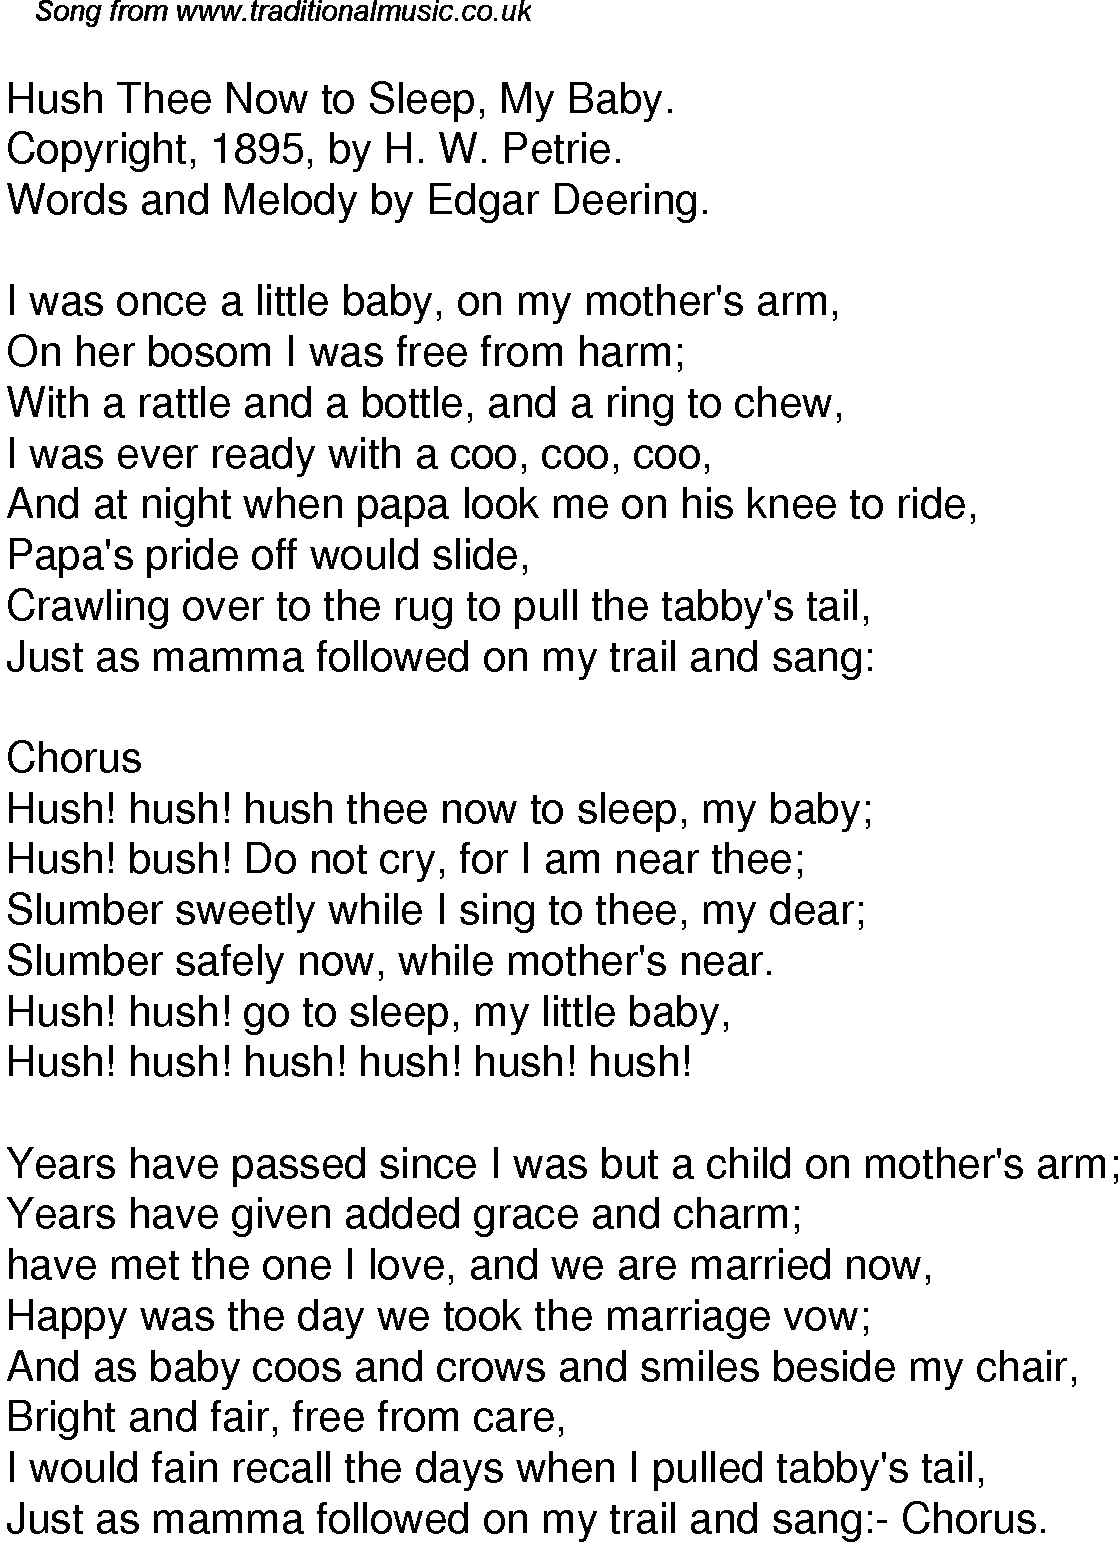 Hush little baby song words | Hush Little Baby lyrics ...